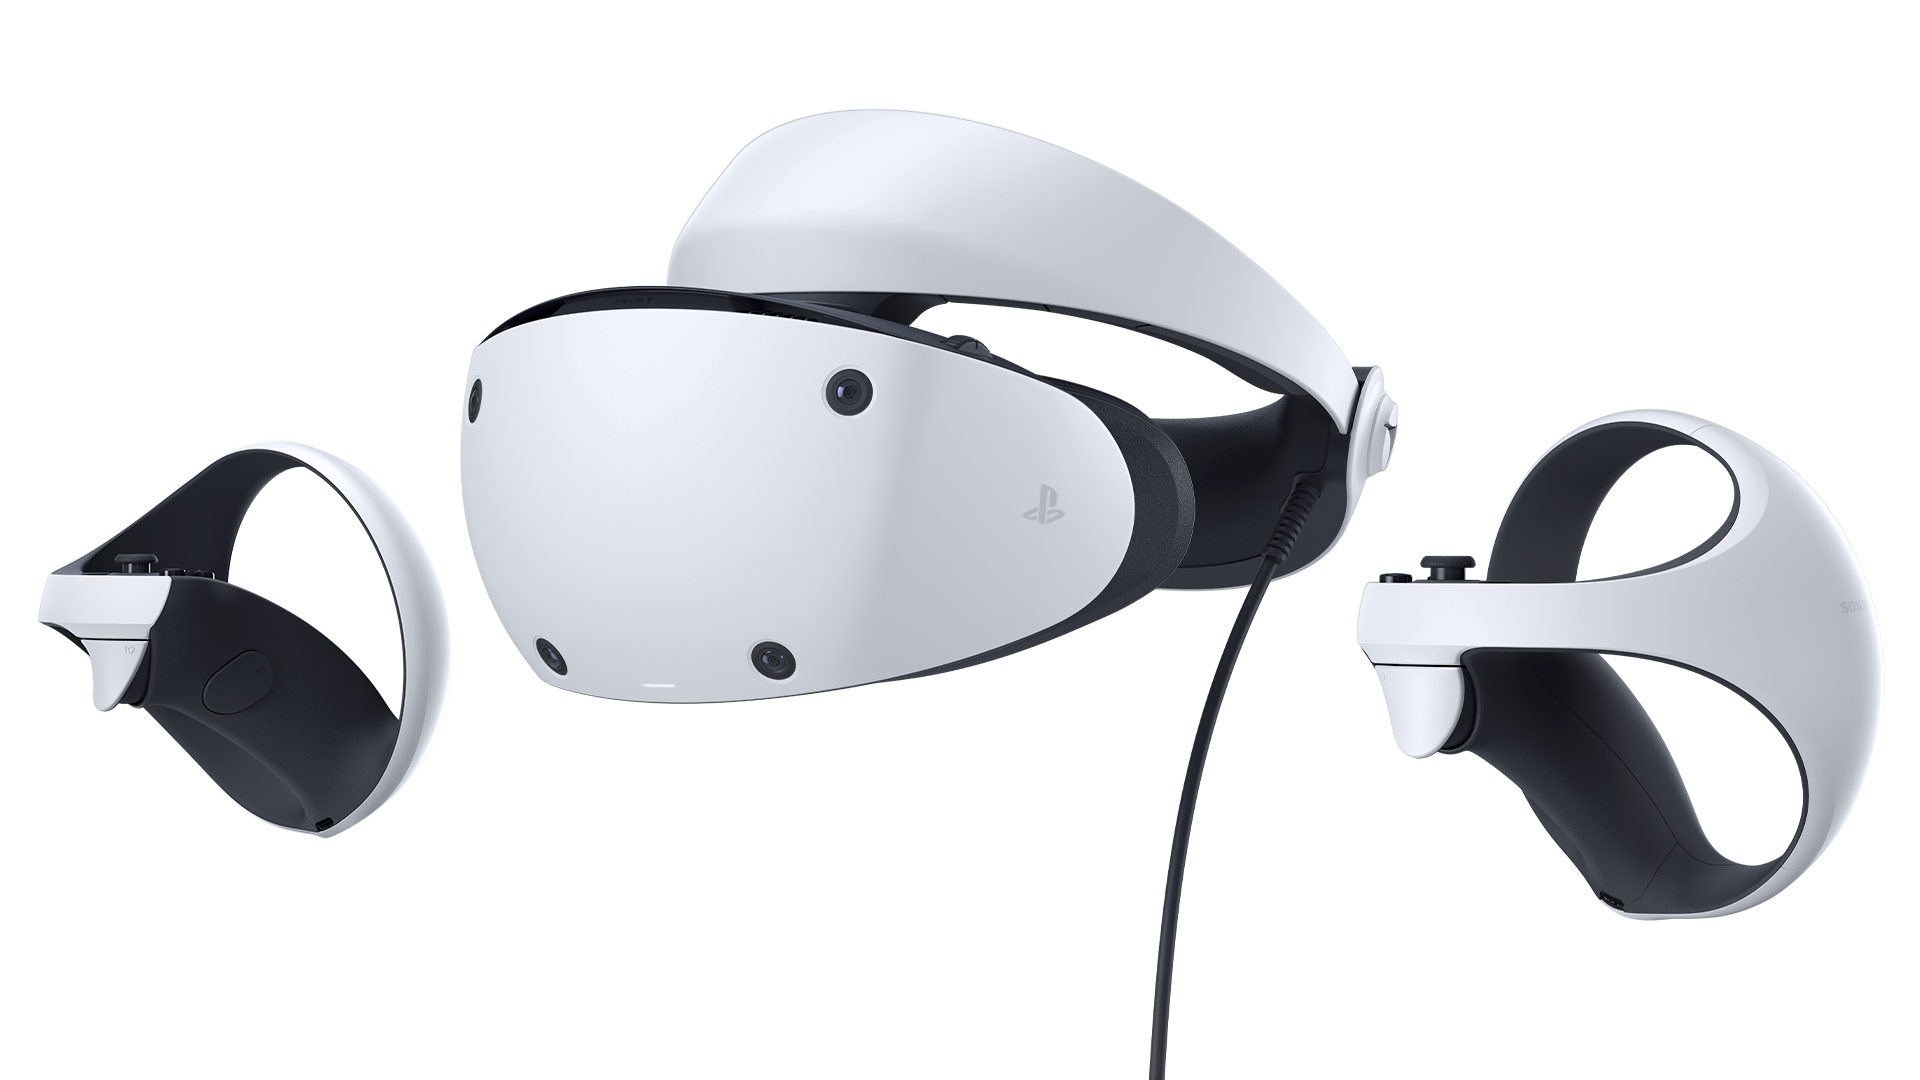 Obrázek soupravy PlayStation VR2 a ovladačů Sense